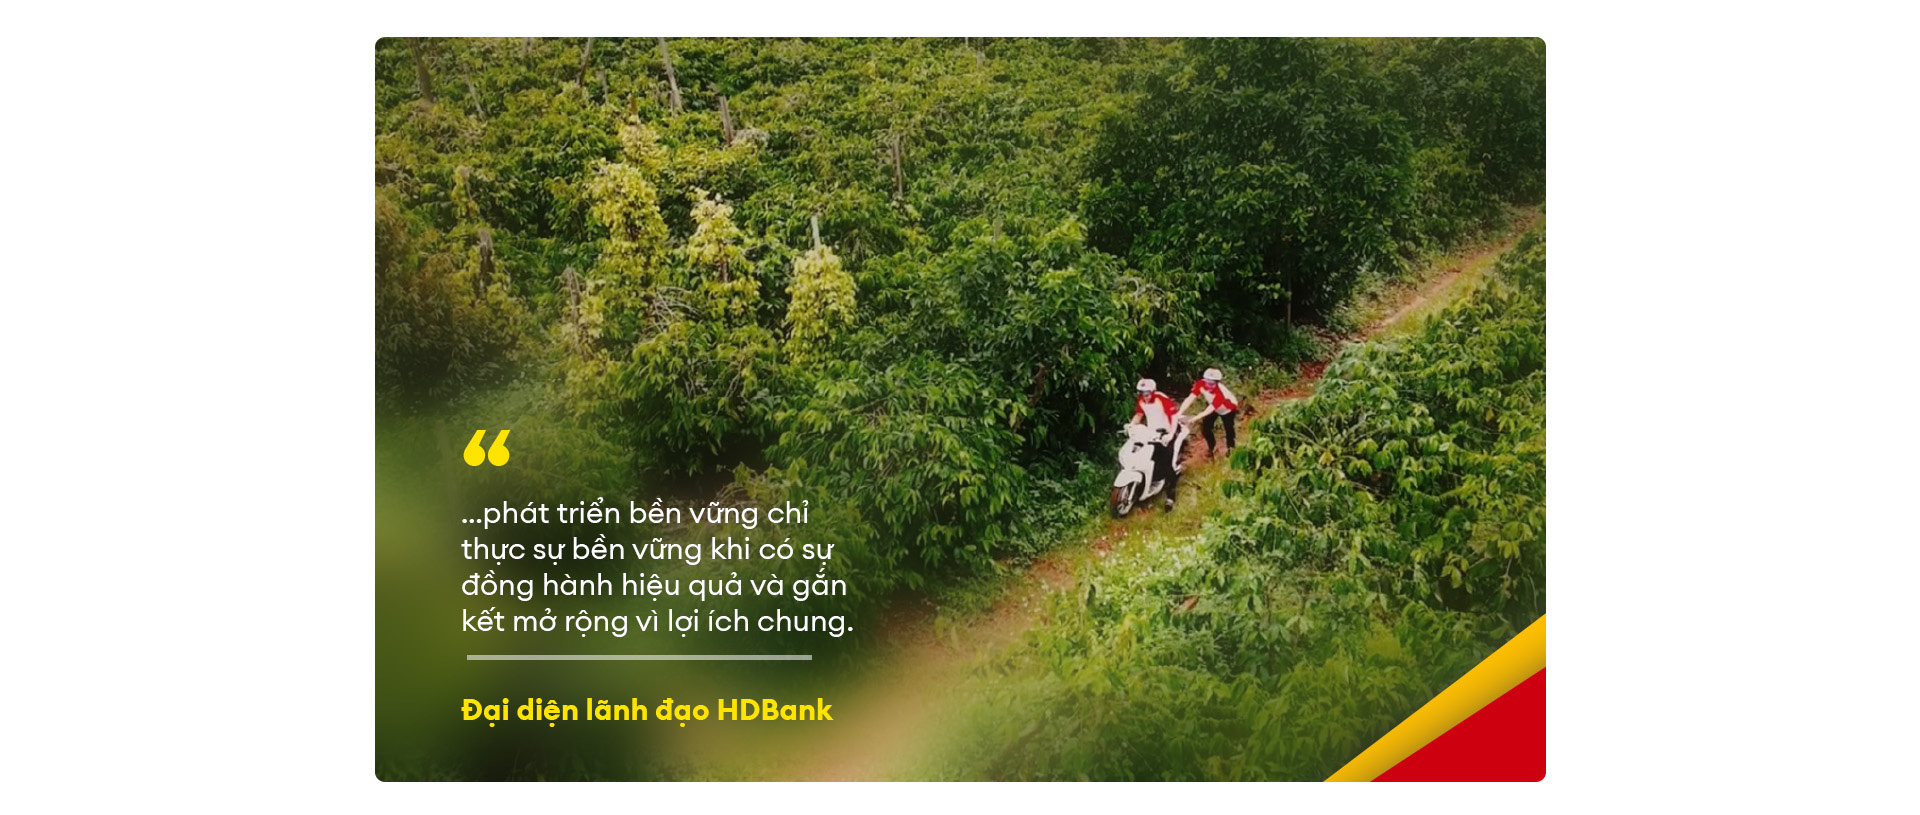 HDBank đi chung, làm cùng hành trình mỗi xã một sản phẩm - Ảnh 9.